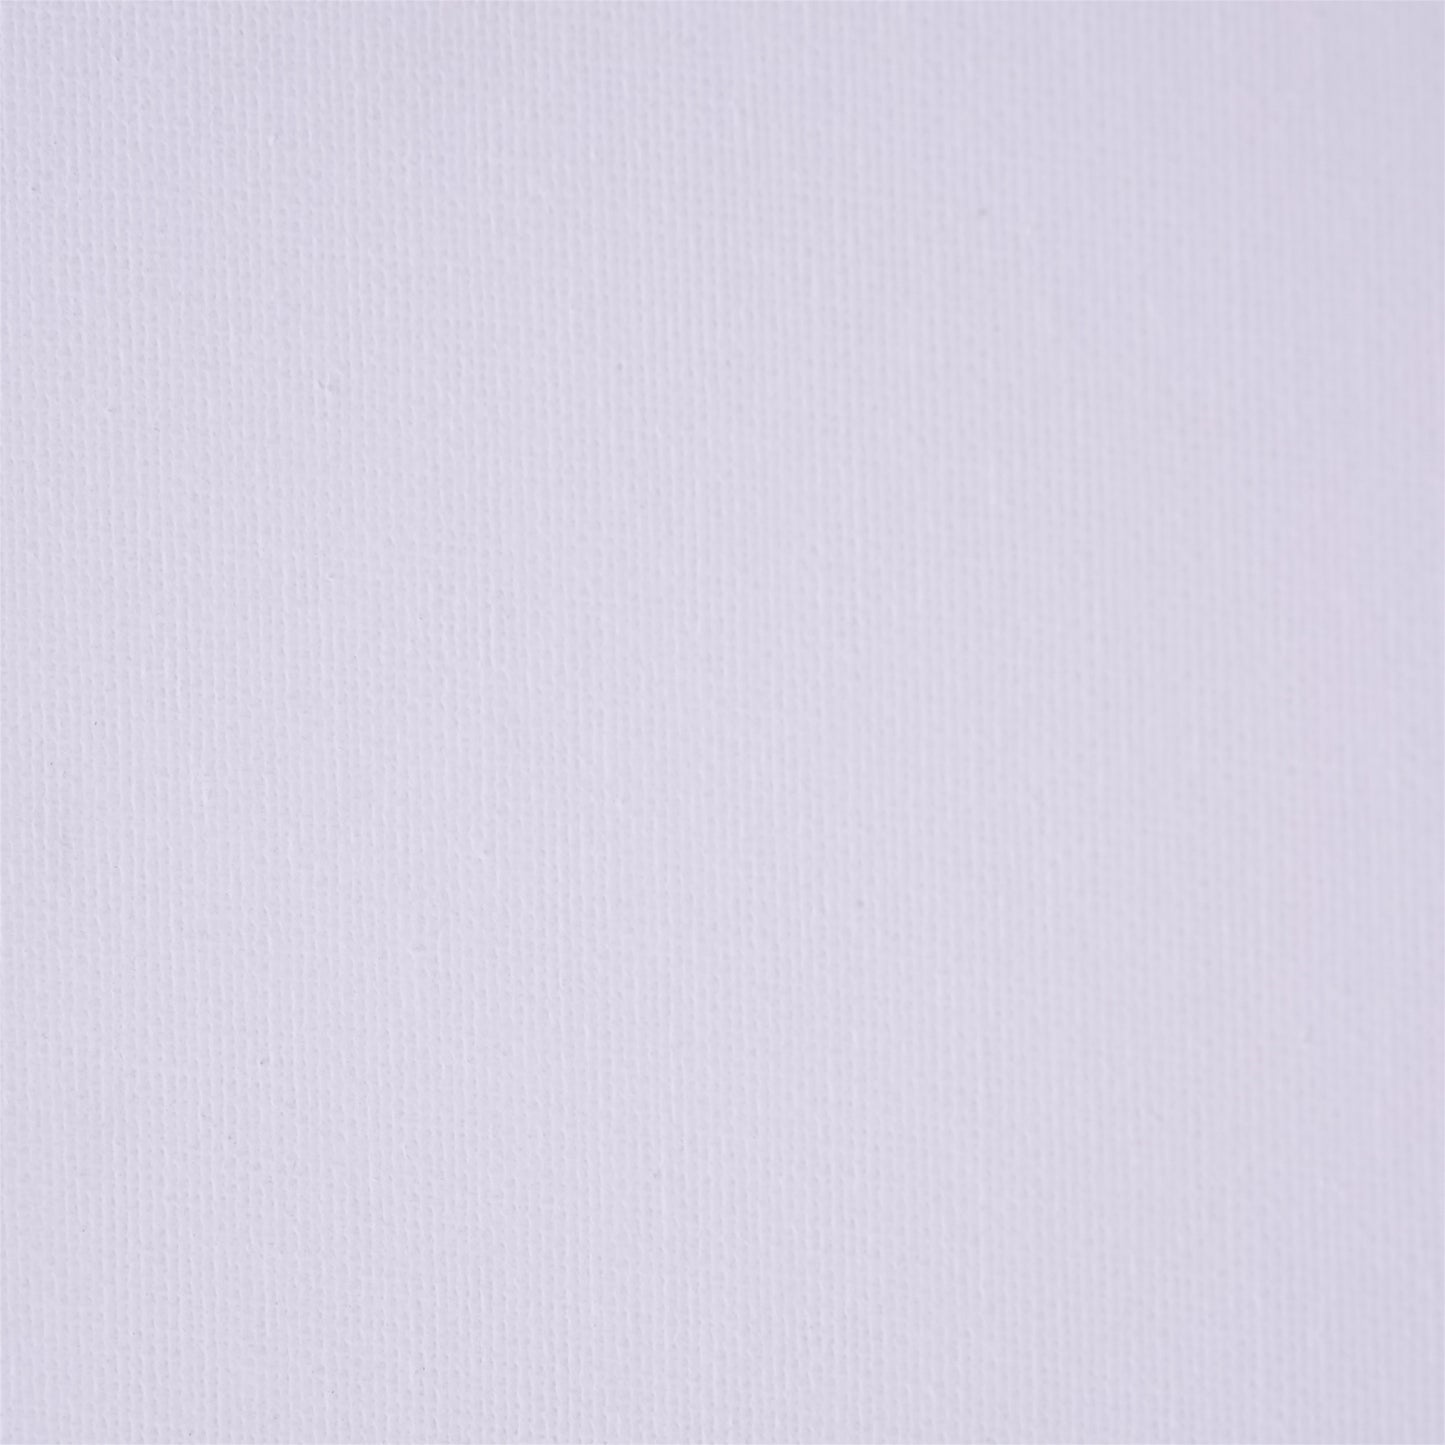 2x KÜNSTLER MALKARTON MIT SCHATTENFUGENRAHMEN 50x50 cm | Leinwand Set